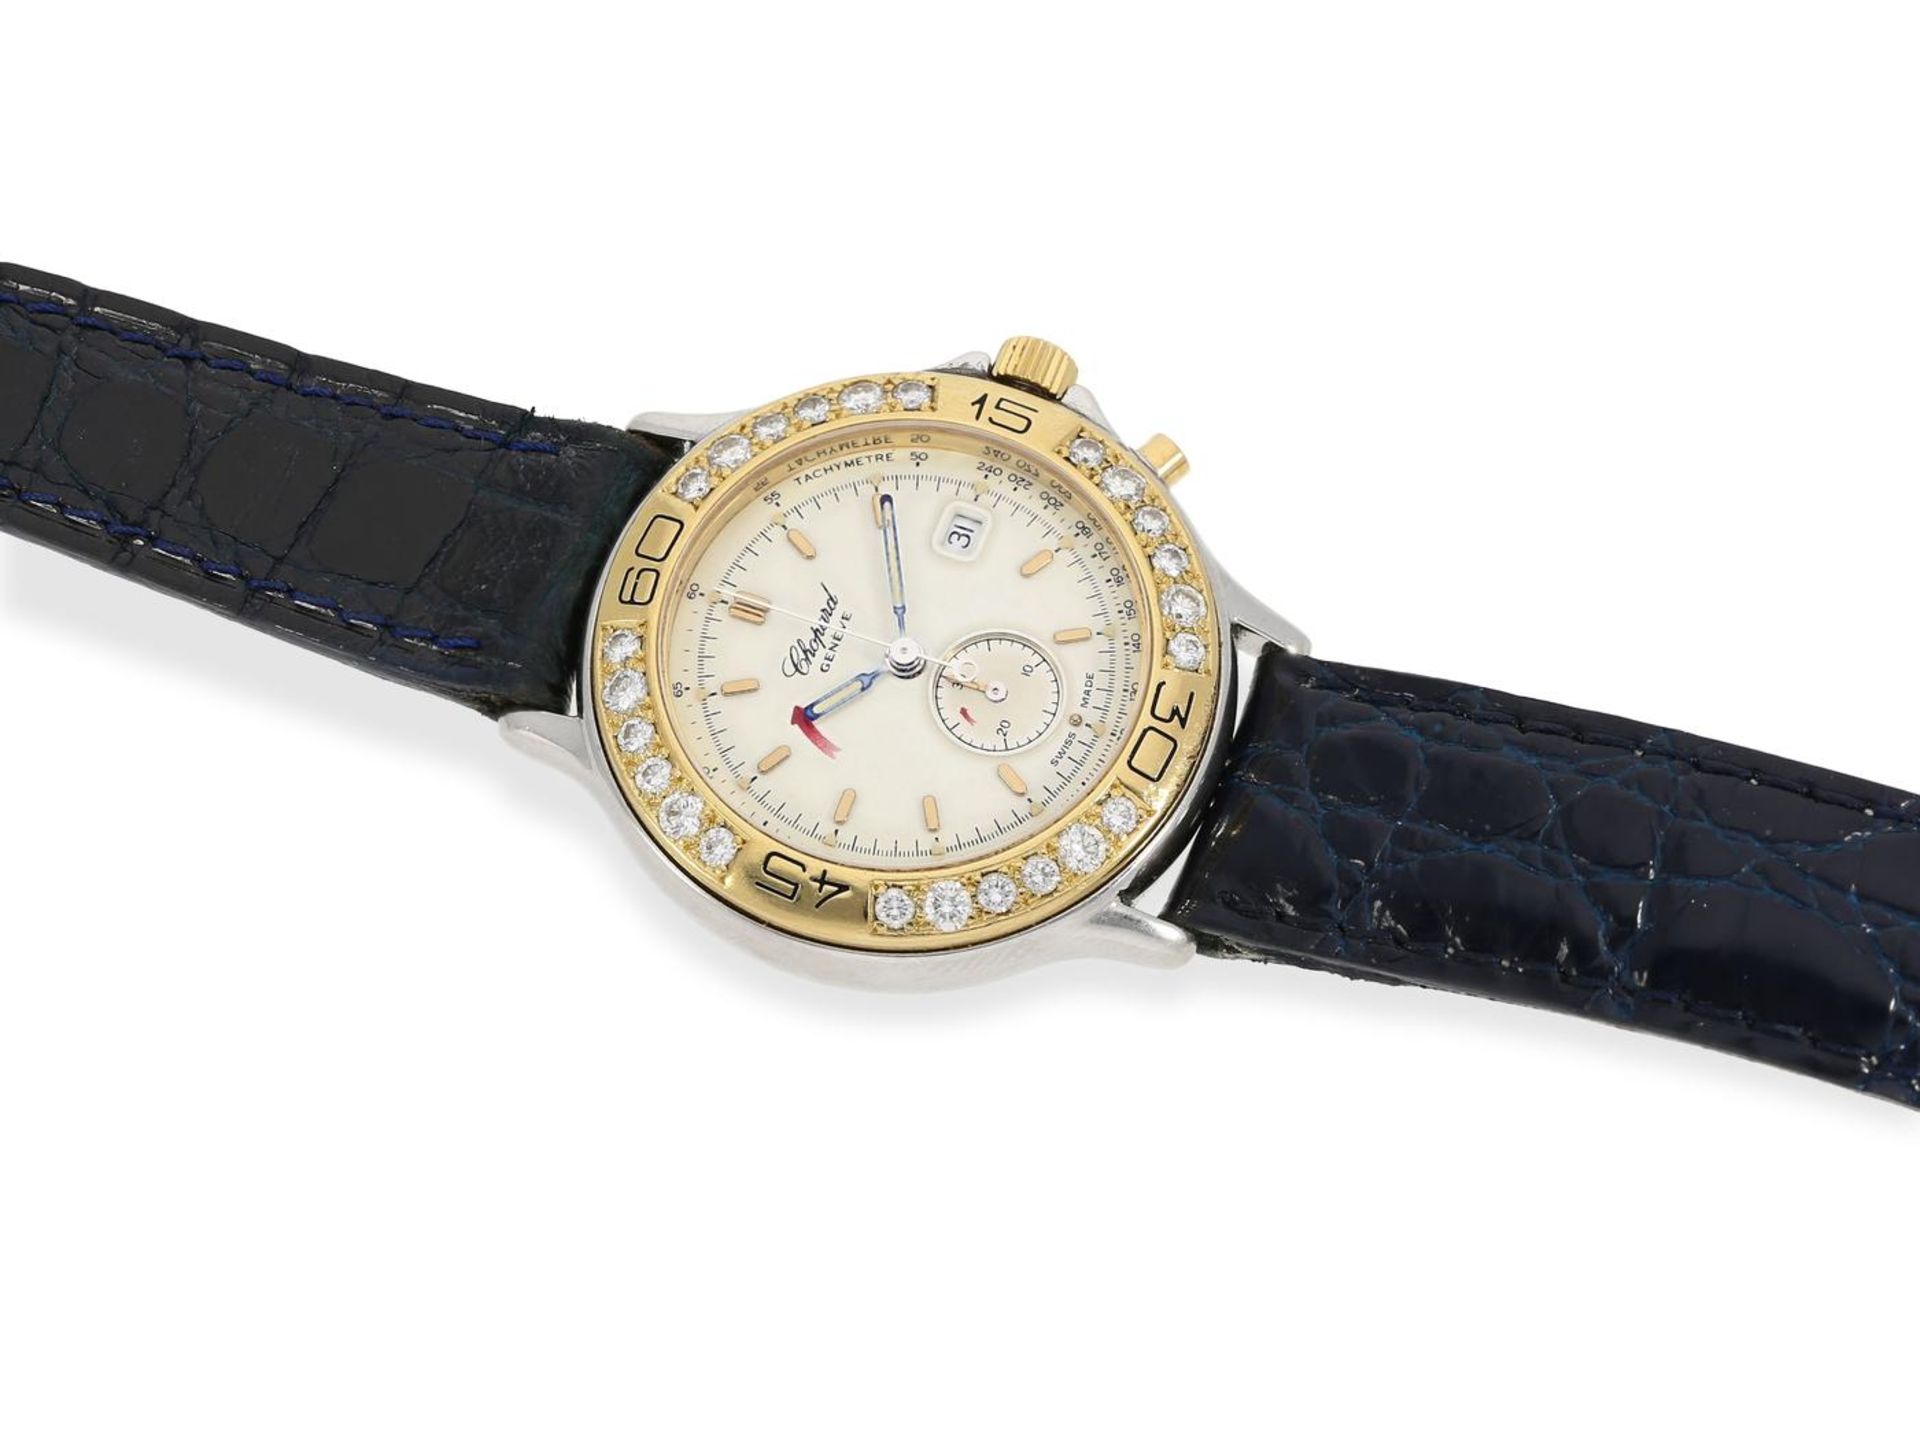 Armbanduhr: Luxuriöser Damen-Chronograph mit Brillantbesatz, Chopard "Mille Miglia" Gold/Edelstahl - Bild 3 aus 3